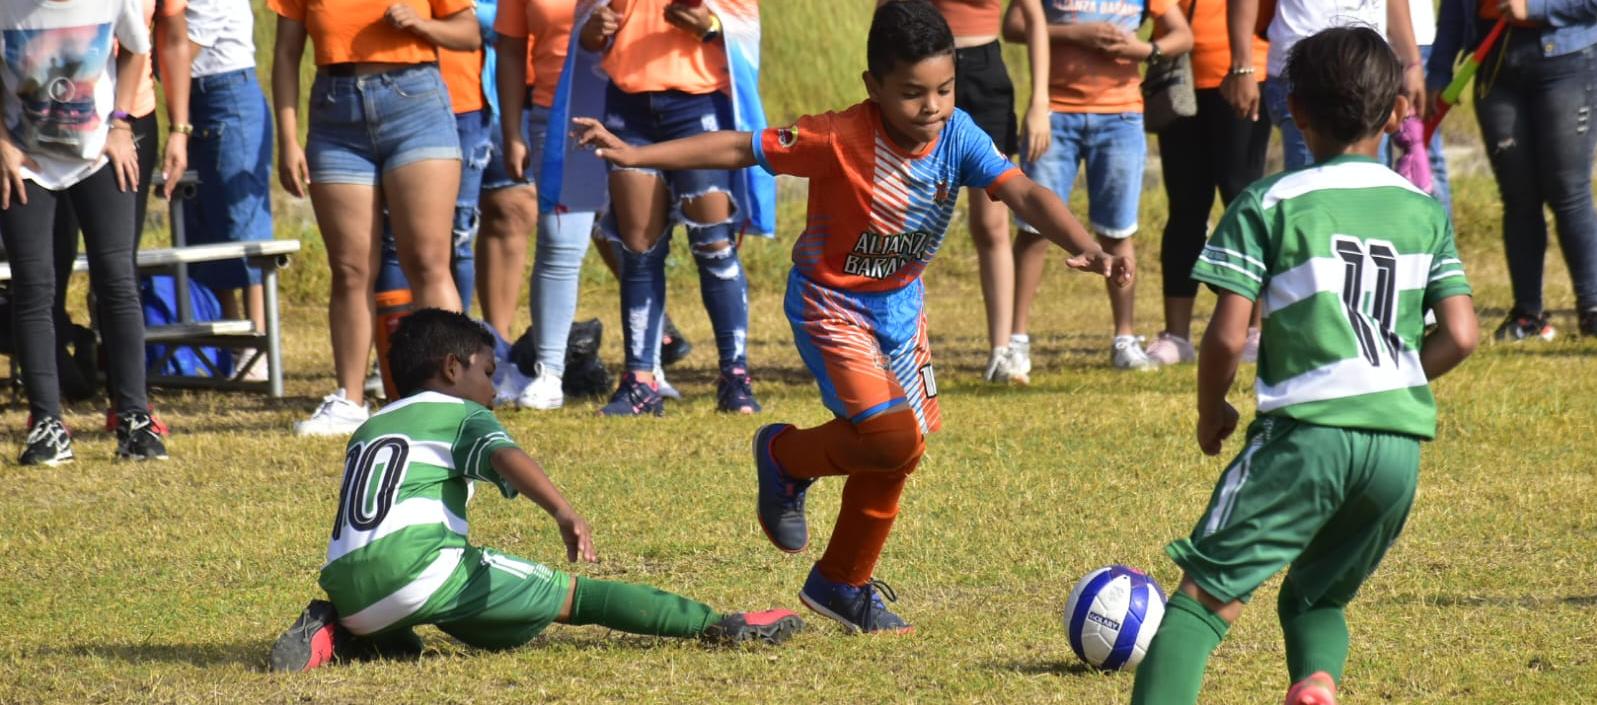 Acción de partido entre Alianza Baranoa y Valledupar FC, en la categoría Sub-15.